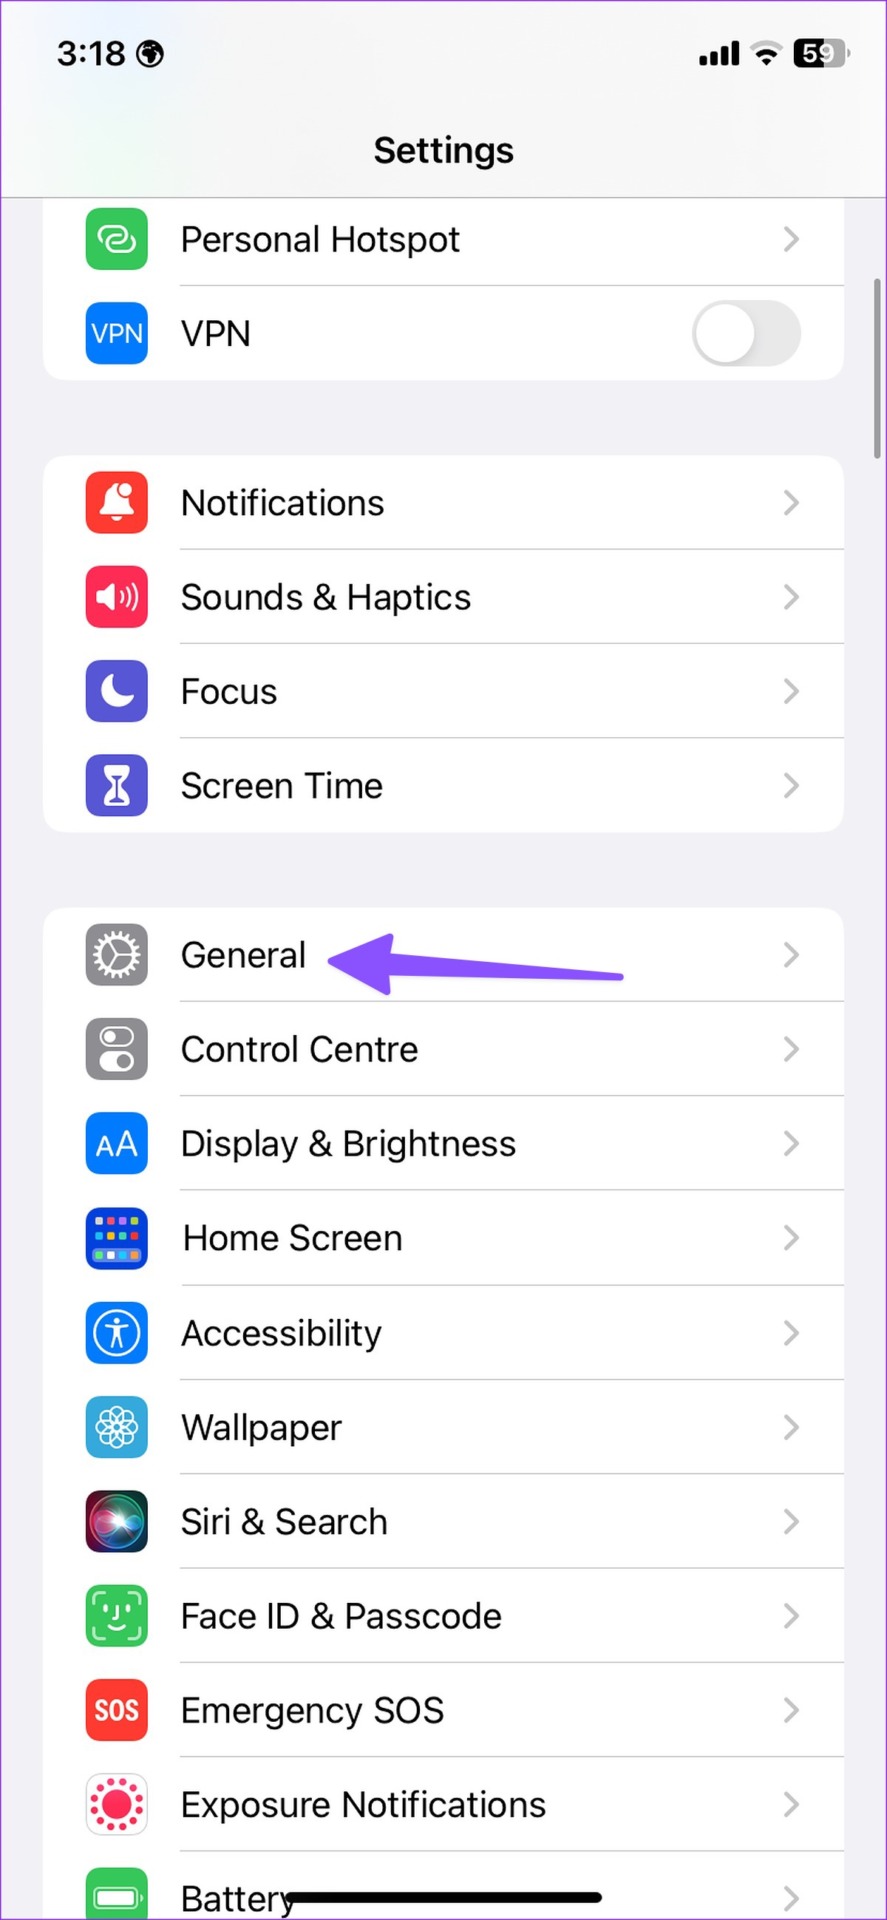 General menu on iPhone